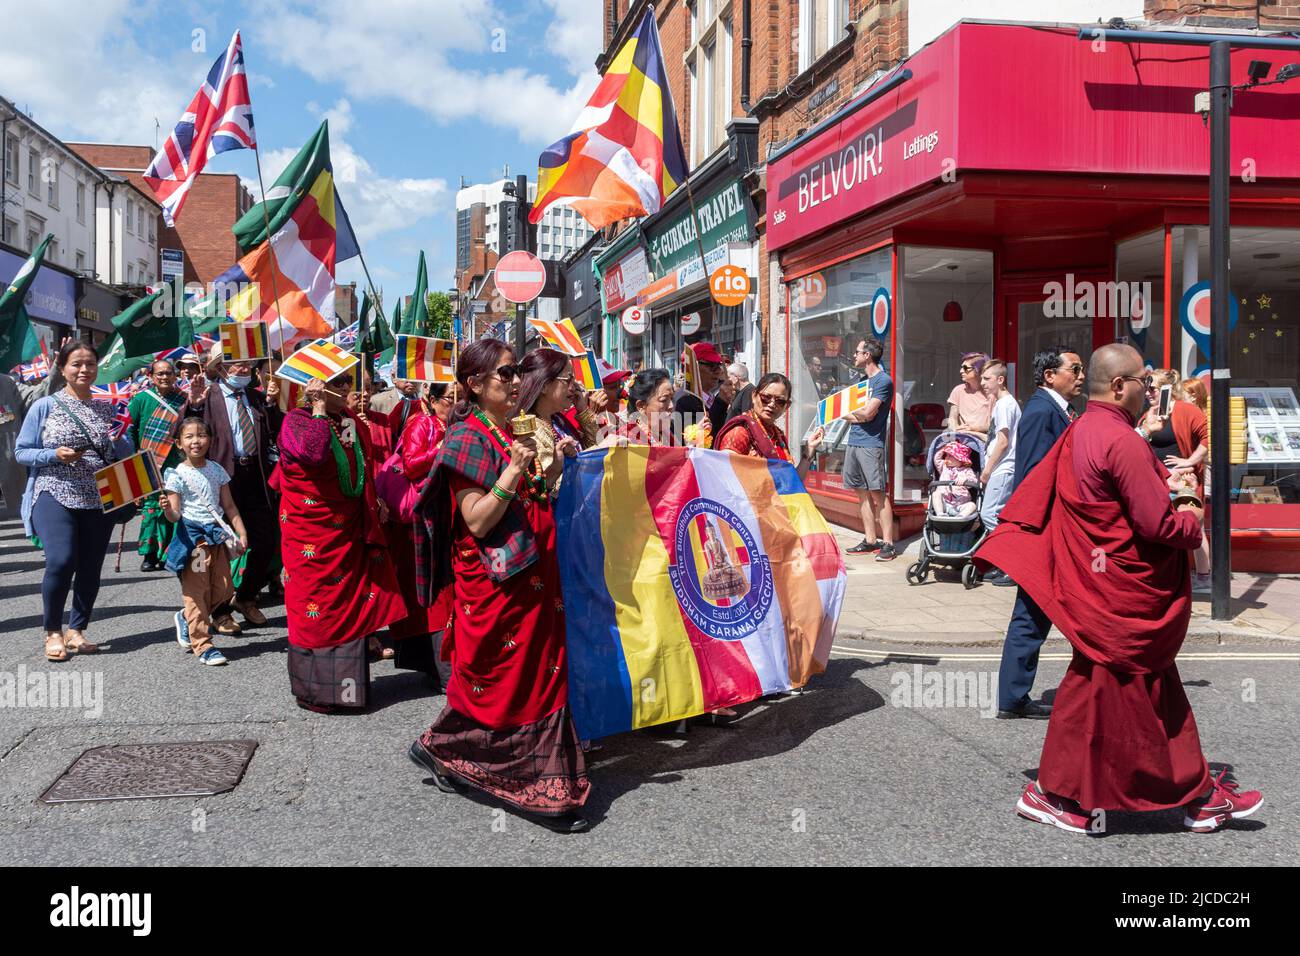 Les népalais du centre communautaire bouddhiste du Grand Parade à la fête de Victoria, un événement annuel à Aldershot, Hampshire, Angleterre, Royaume-Uni Banque D'Images